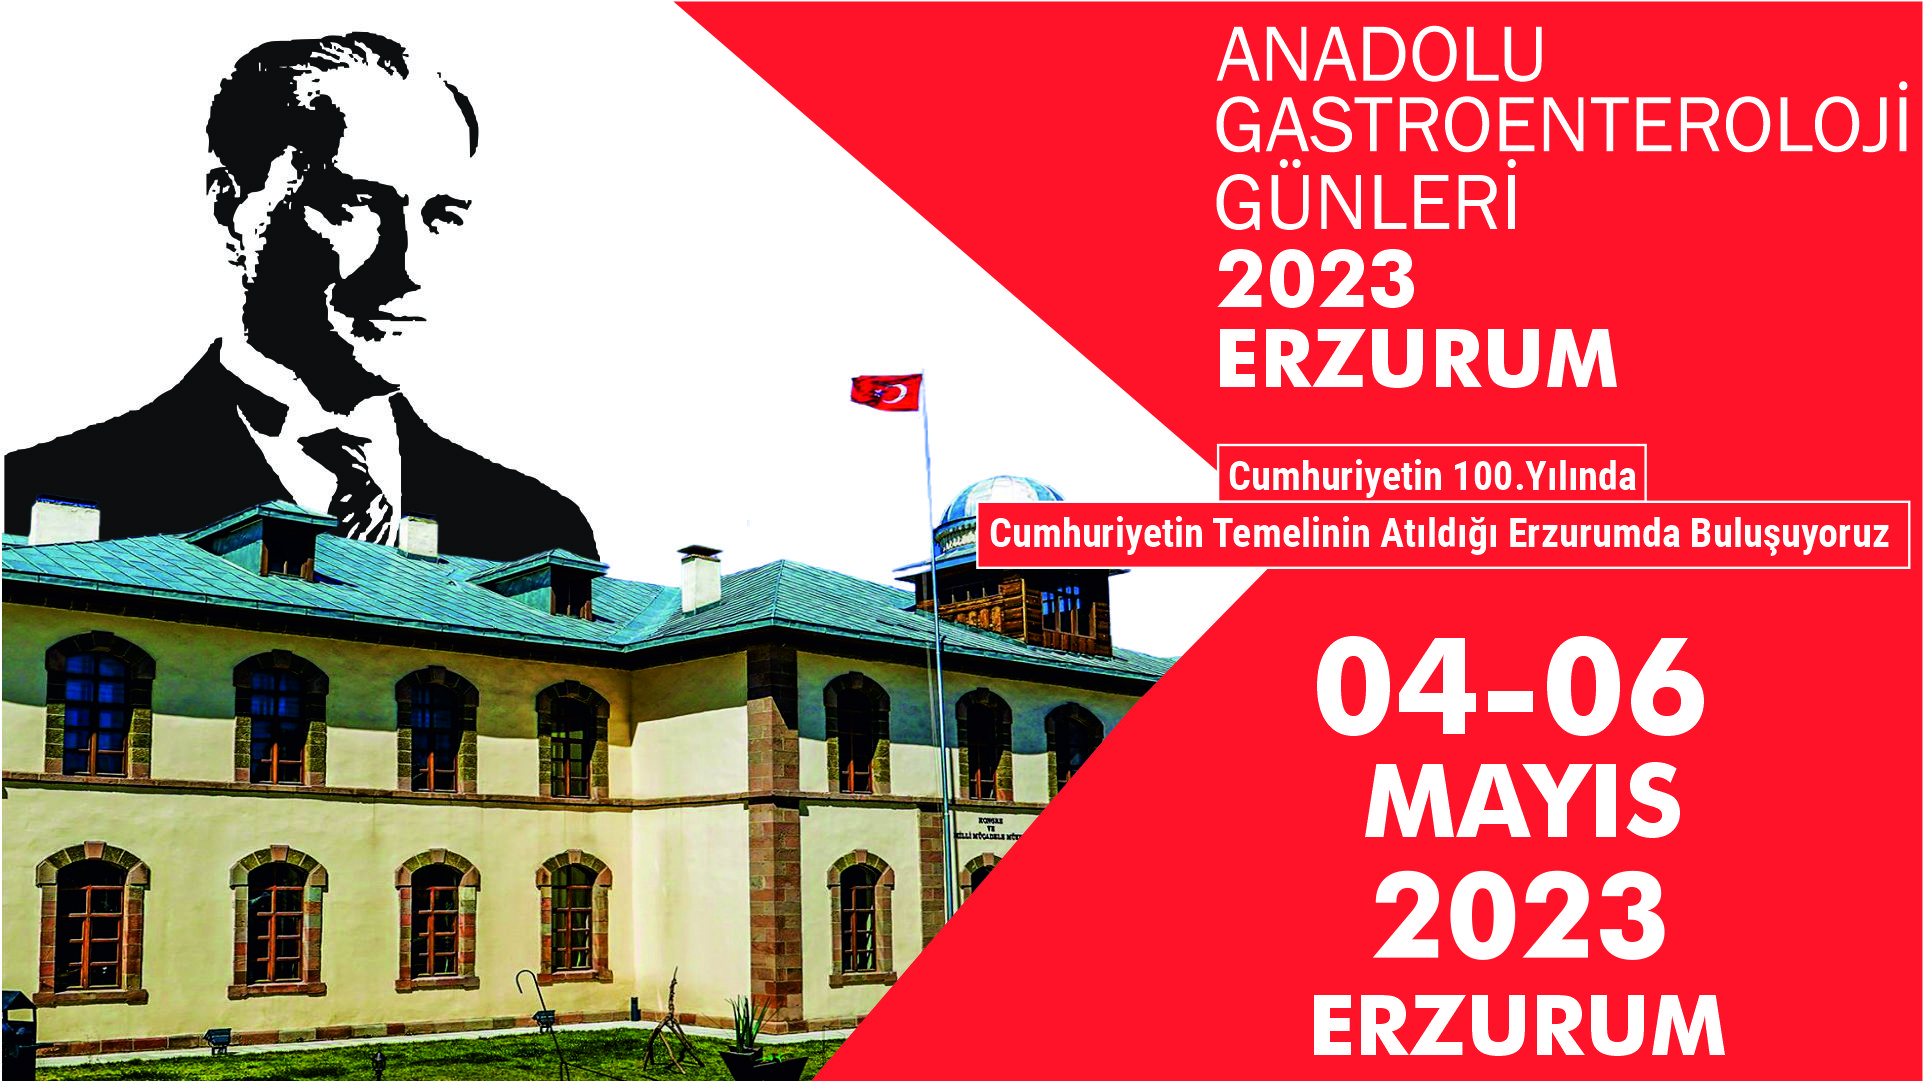 Anadolu Gastroenteroloji Günleri 2023 Erzurum